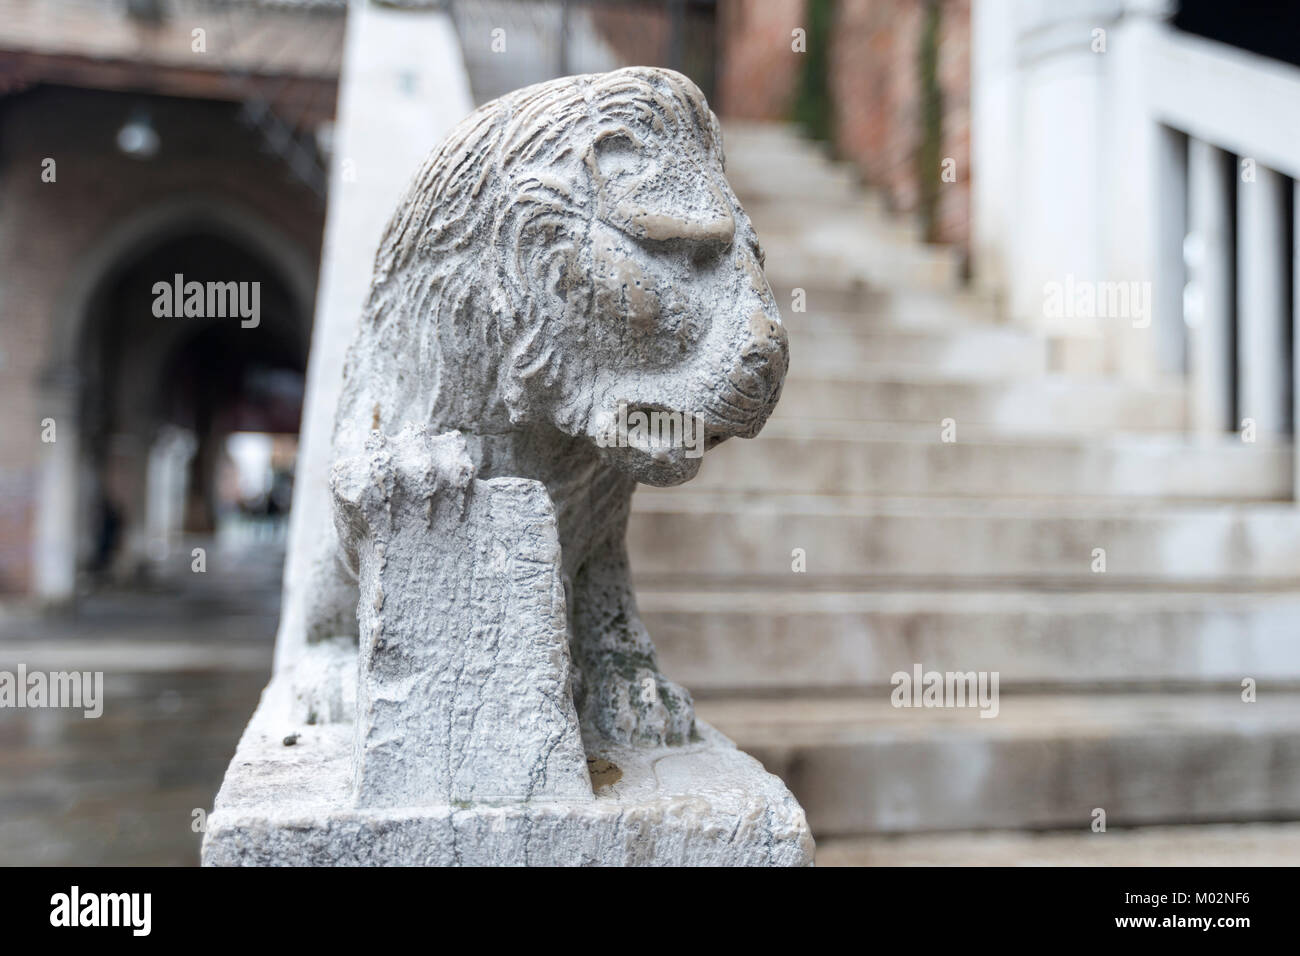 Kleine Skulptur von Lion auf handläufe der Treppe in Venedig, Italien Stockfoto